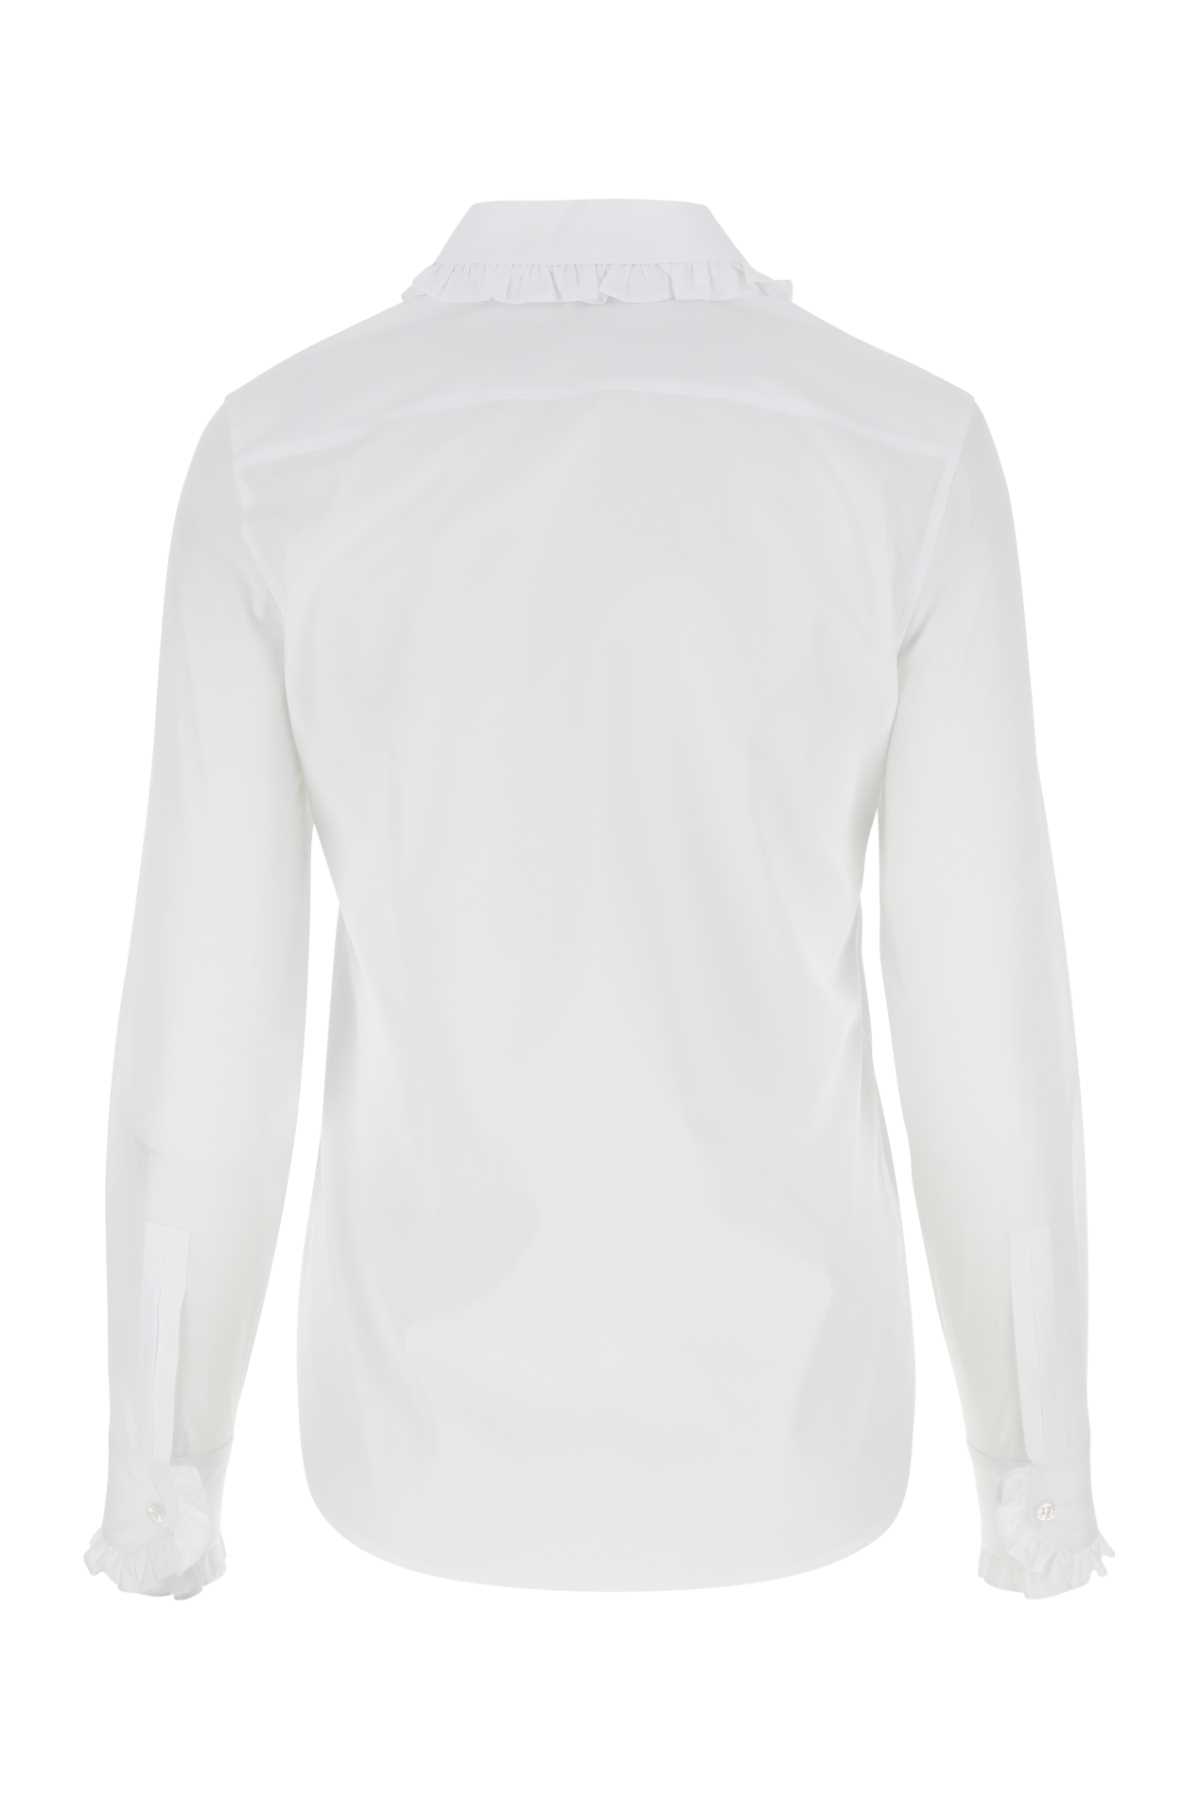 Saint Laurent White Poplin Shirt In 9000